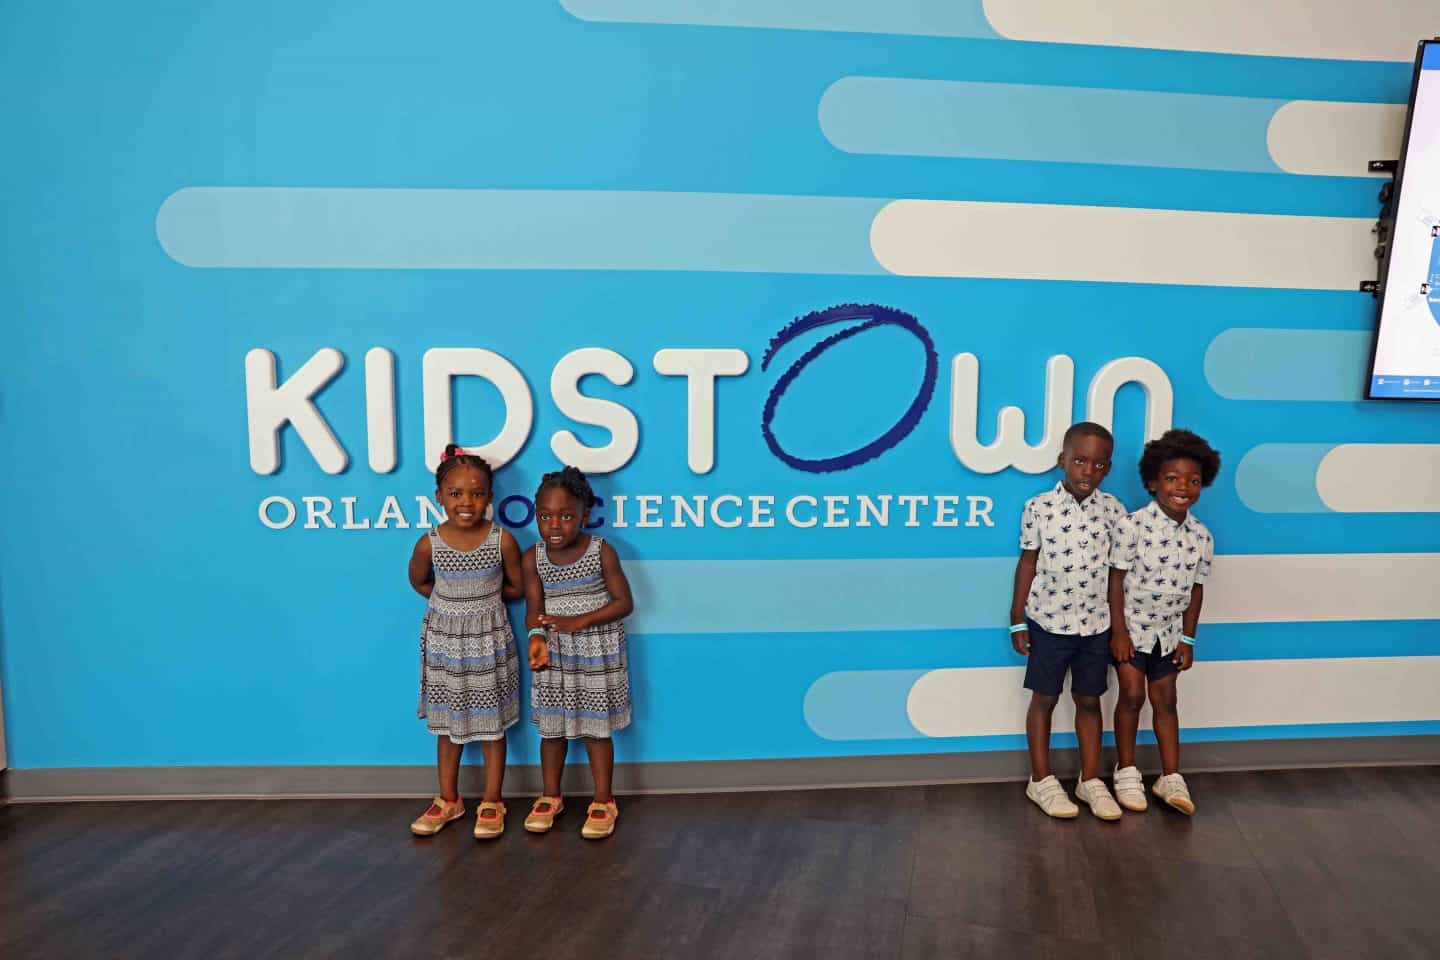 Black Family Travel kidstown orlandso science center